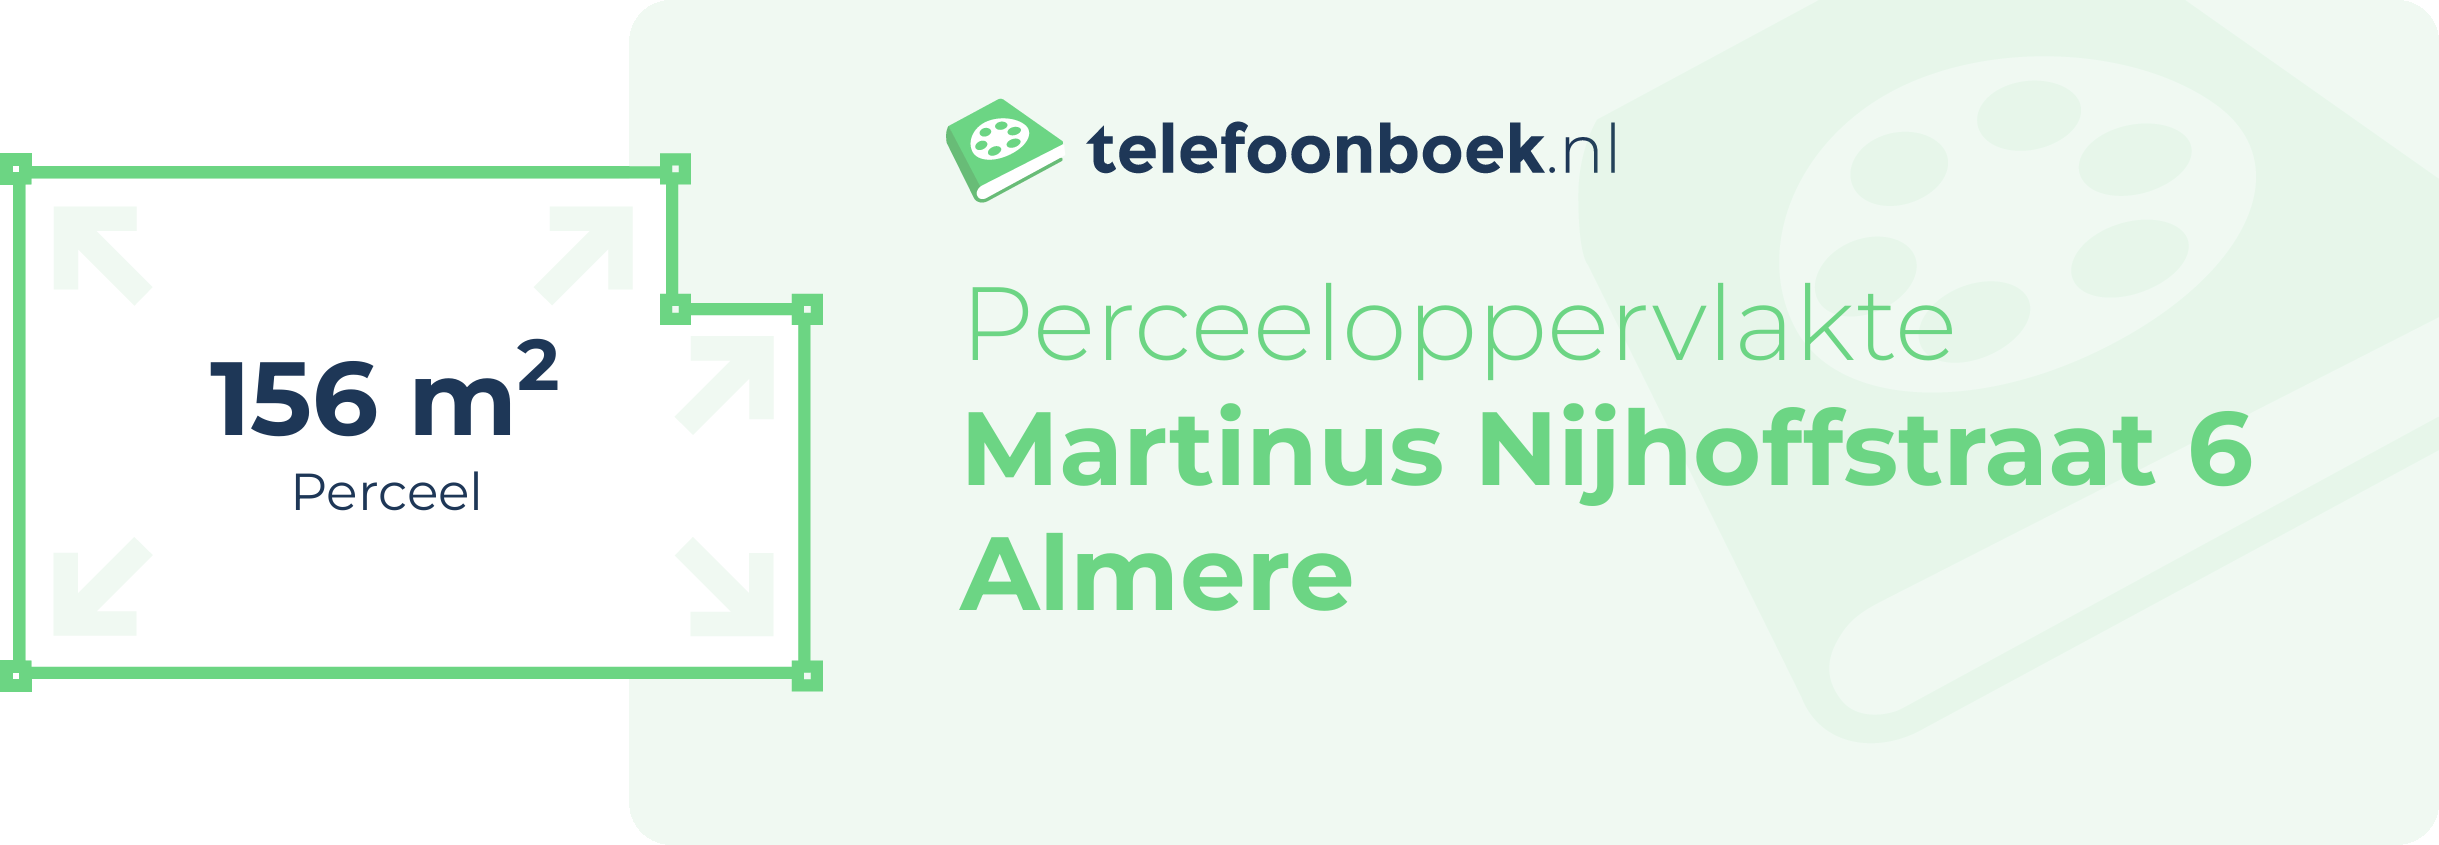 Perceeloppervlakte Martinus Nijhoffstraat 6 Almere